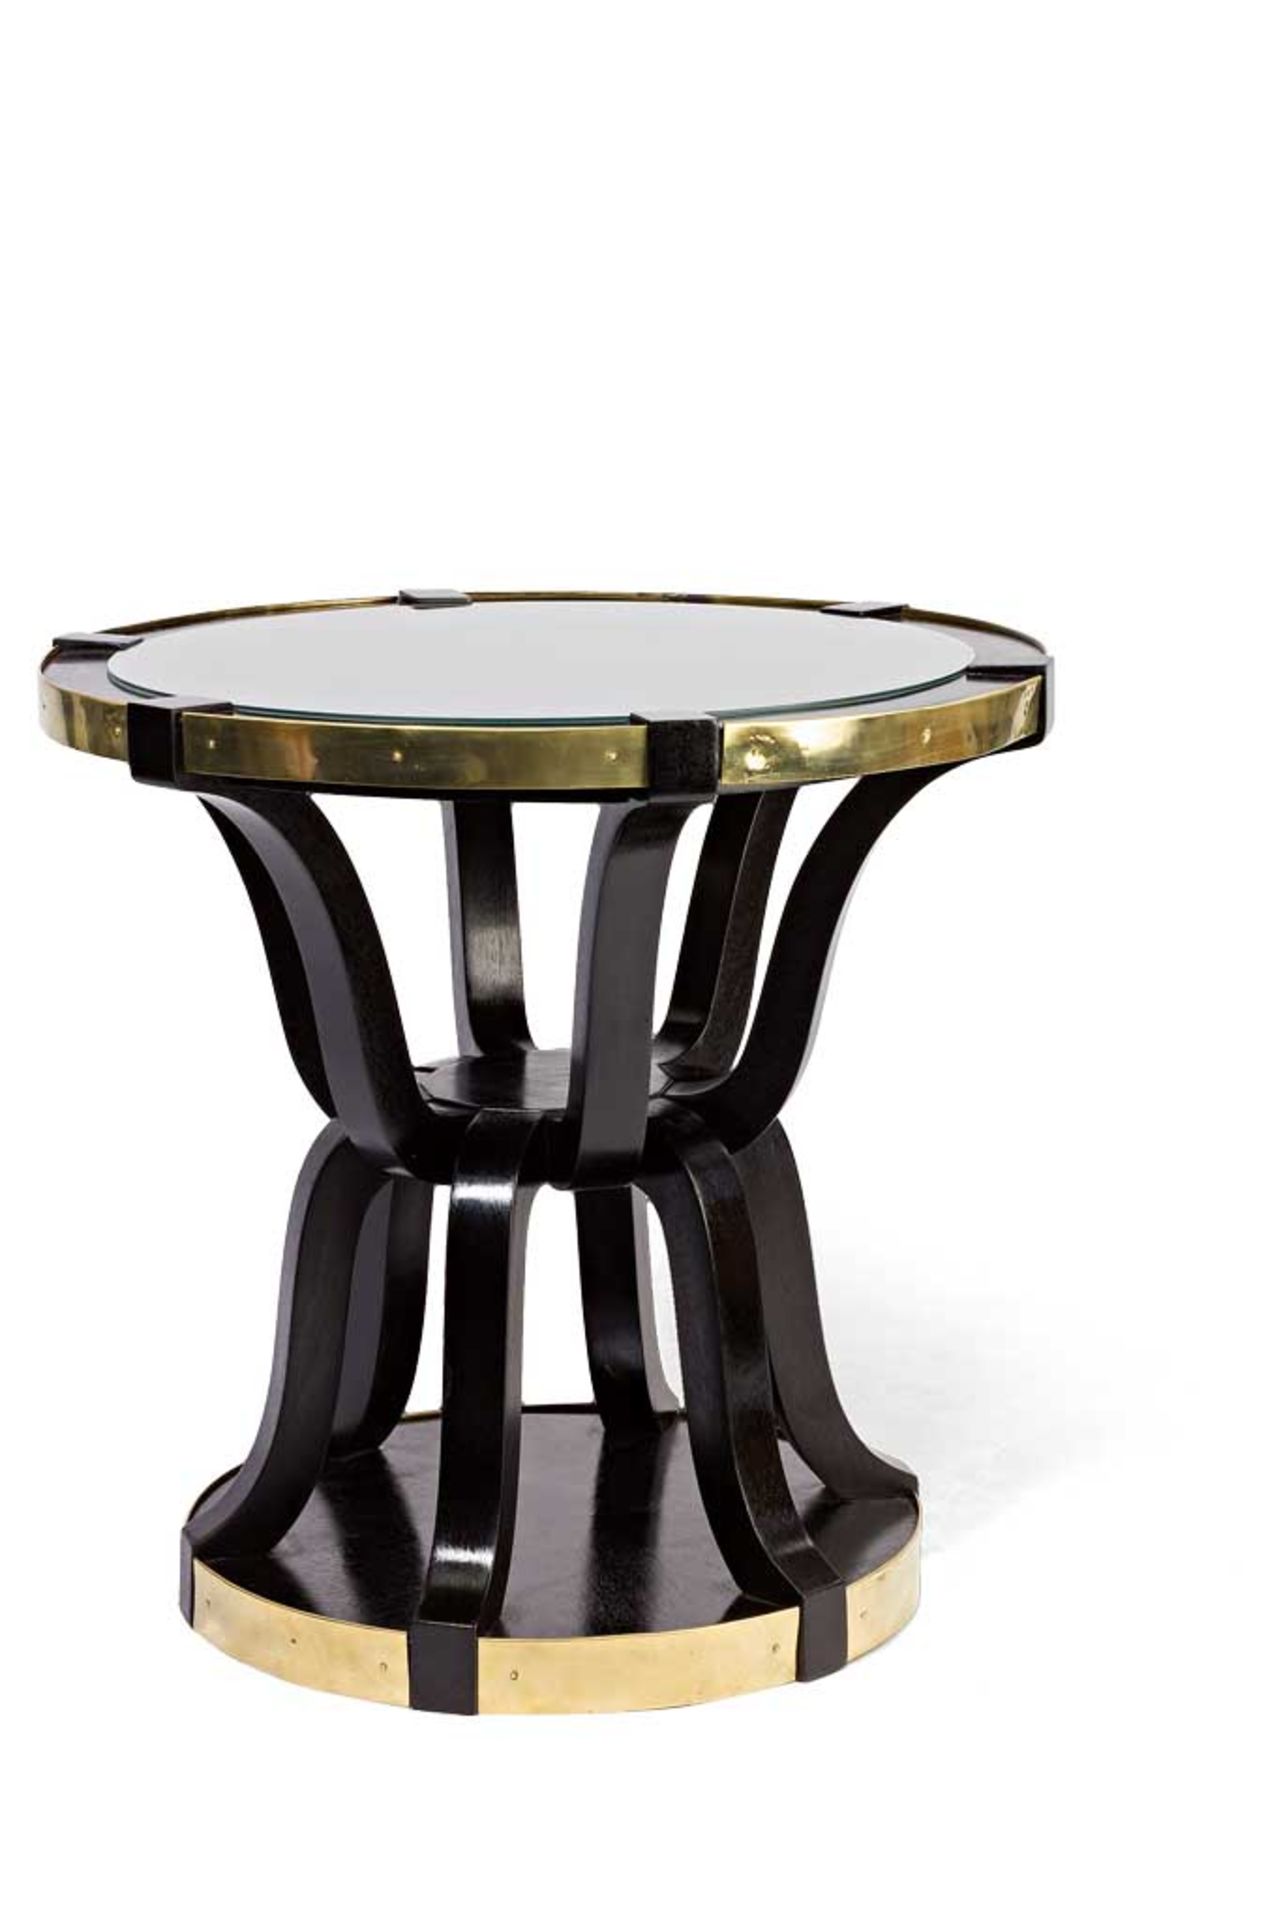 Tisch im Stil von Adolf Loos. Runde Plinthe. Zwölf ineinander greifende, geschweifte Beine. Runde